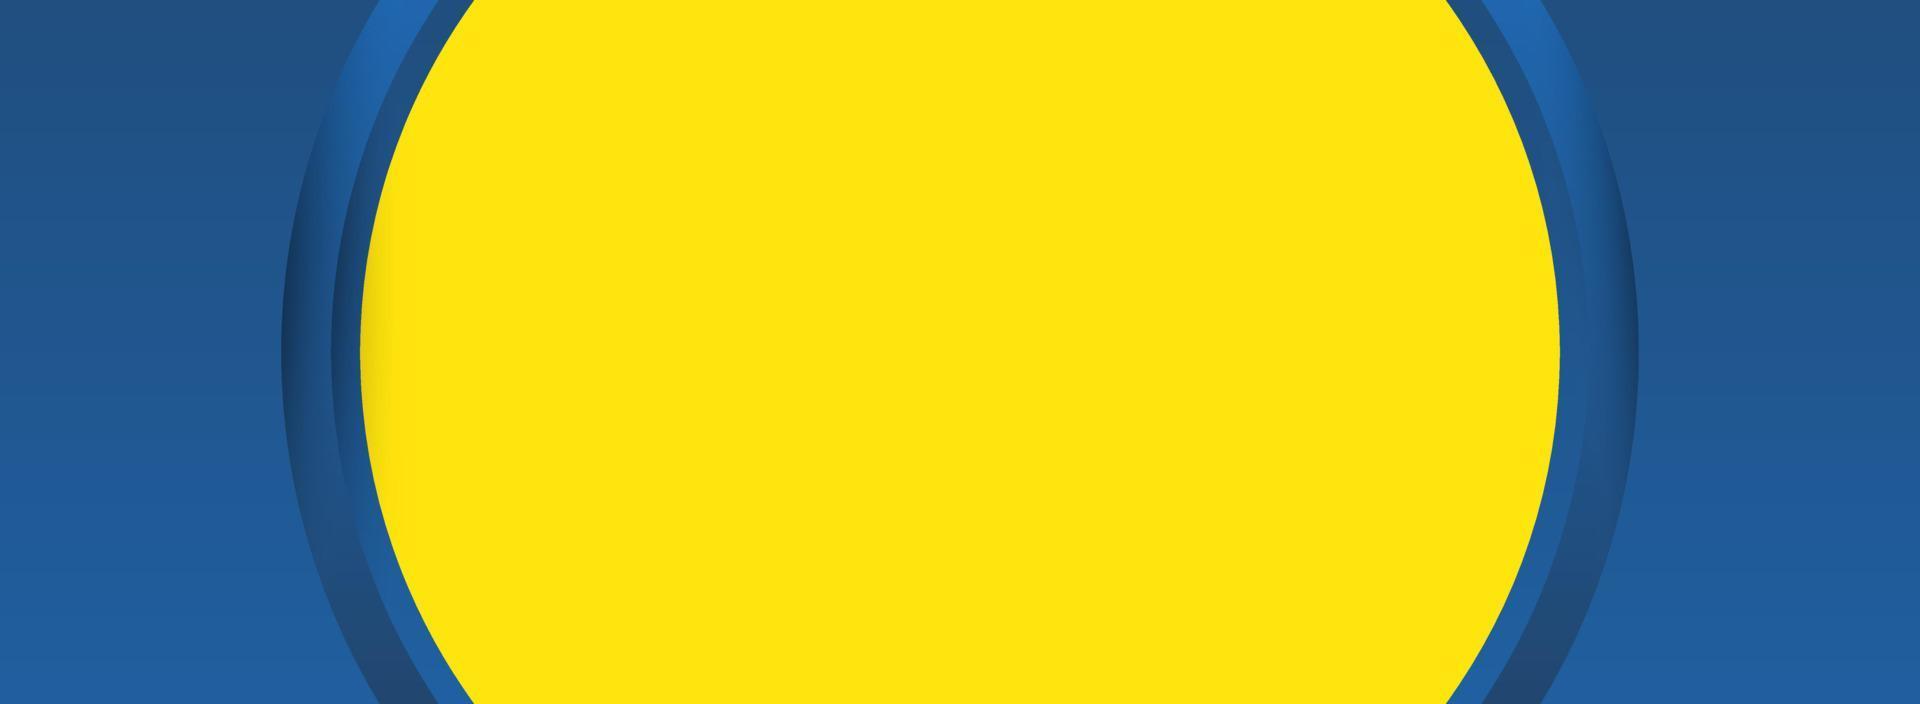 gráfico futurista hipster amarillo y azul. con fondo amarillo usado en banner web y espacio para descripción de texto vector